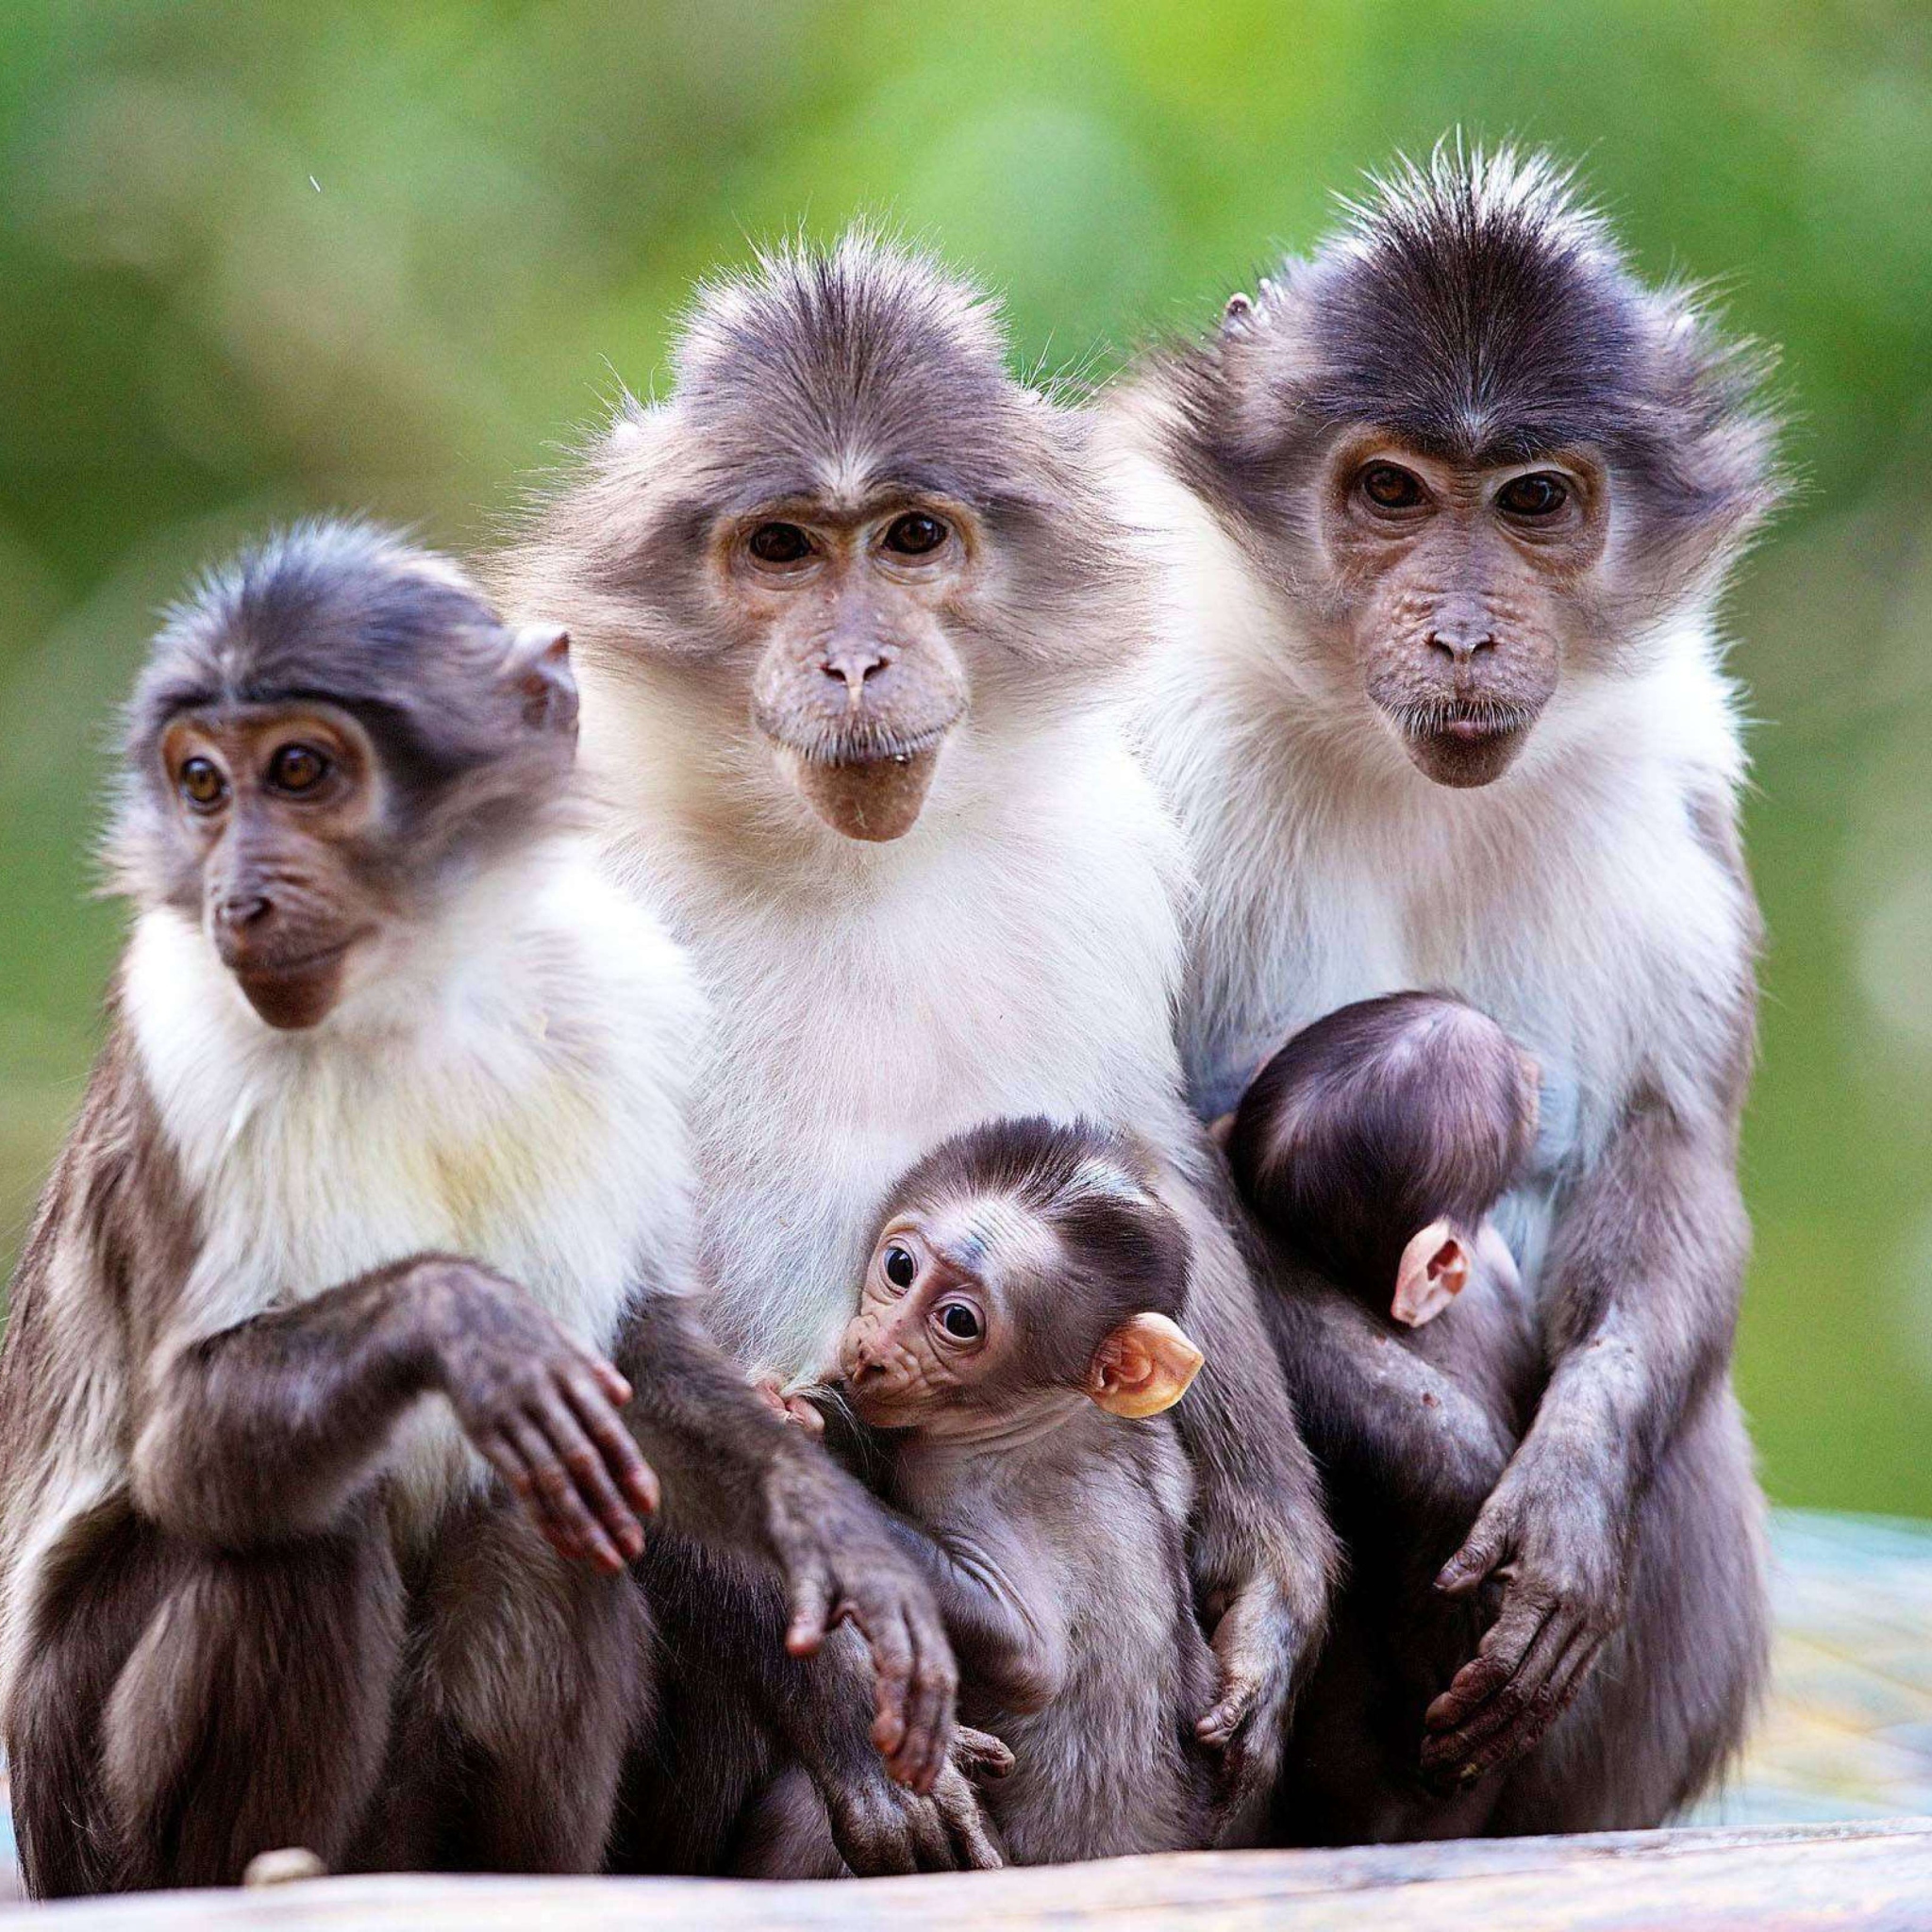 Sfondi Funny Monkeys With Their Babies 2048x2048